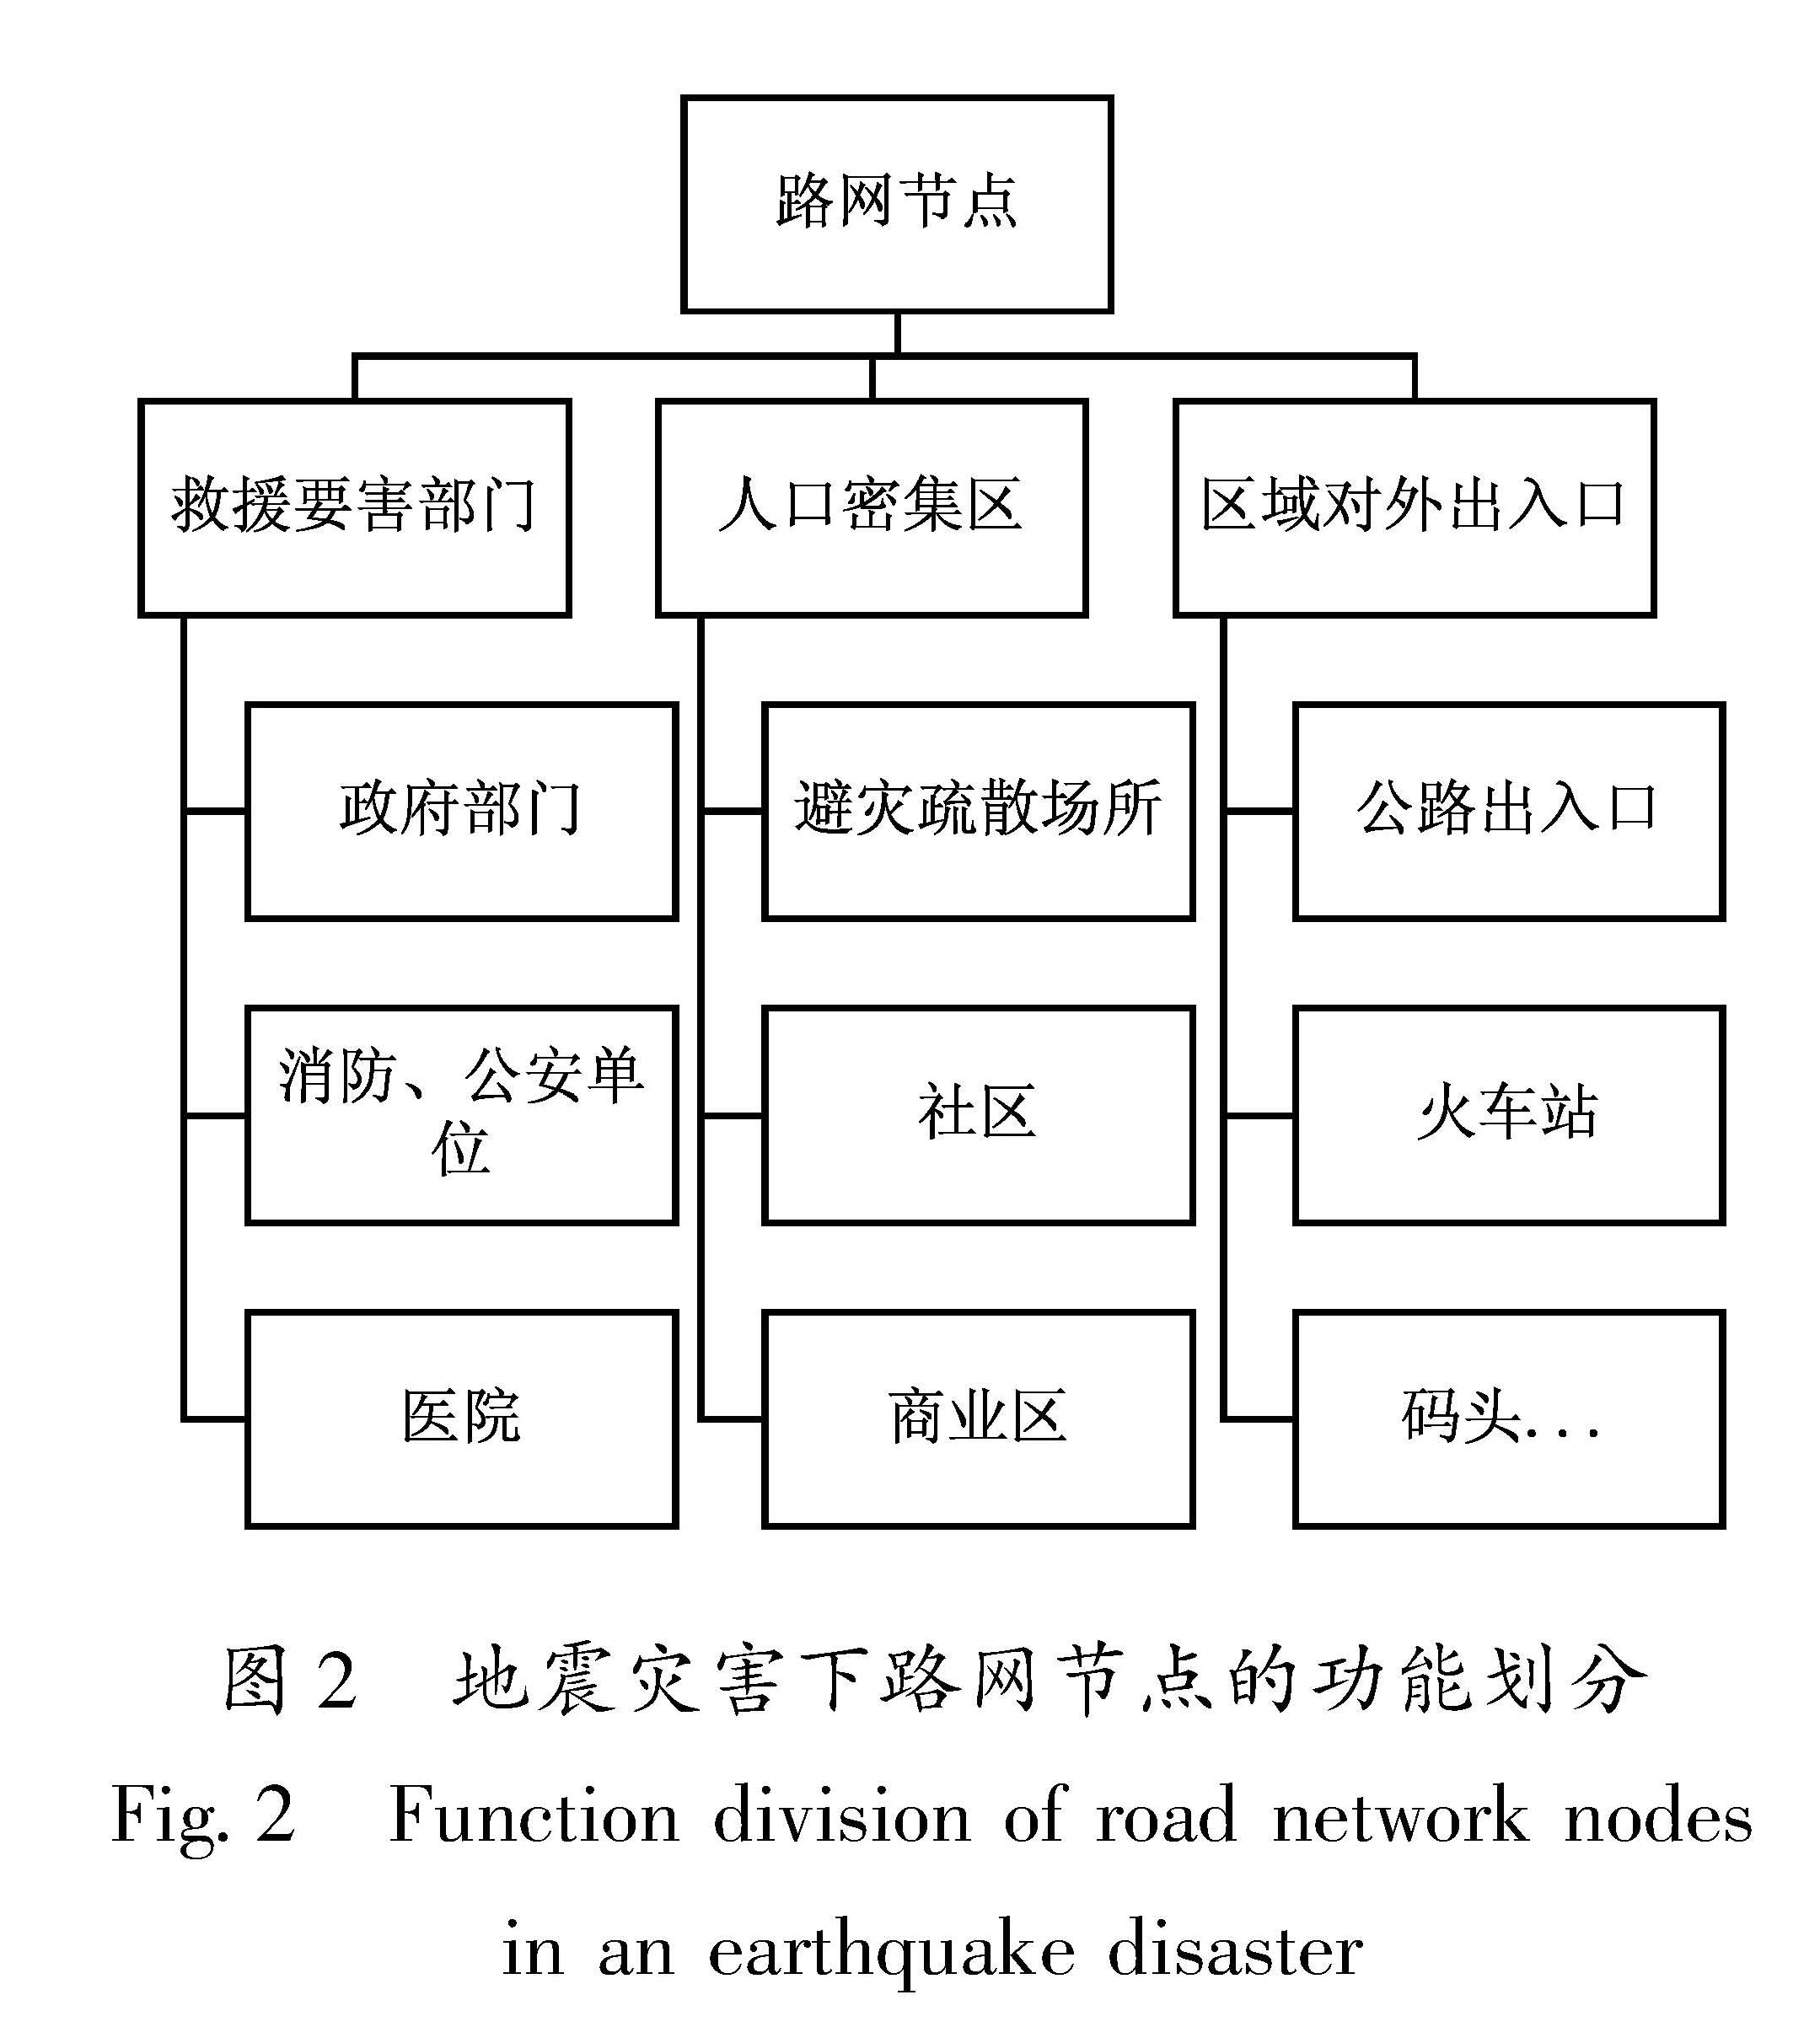 图2 地震灾害下路网节点的功能划分<br/>Fig.2 Function division of road network nodes in an earthquake disaster